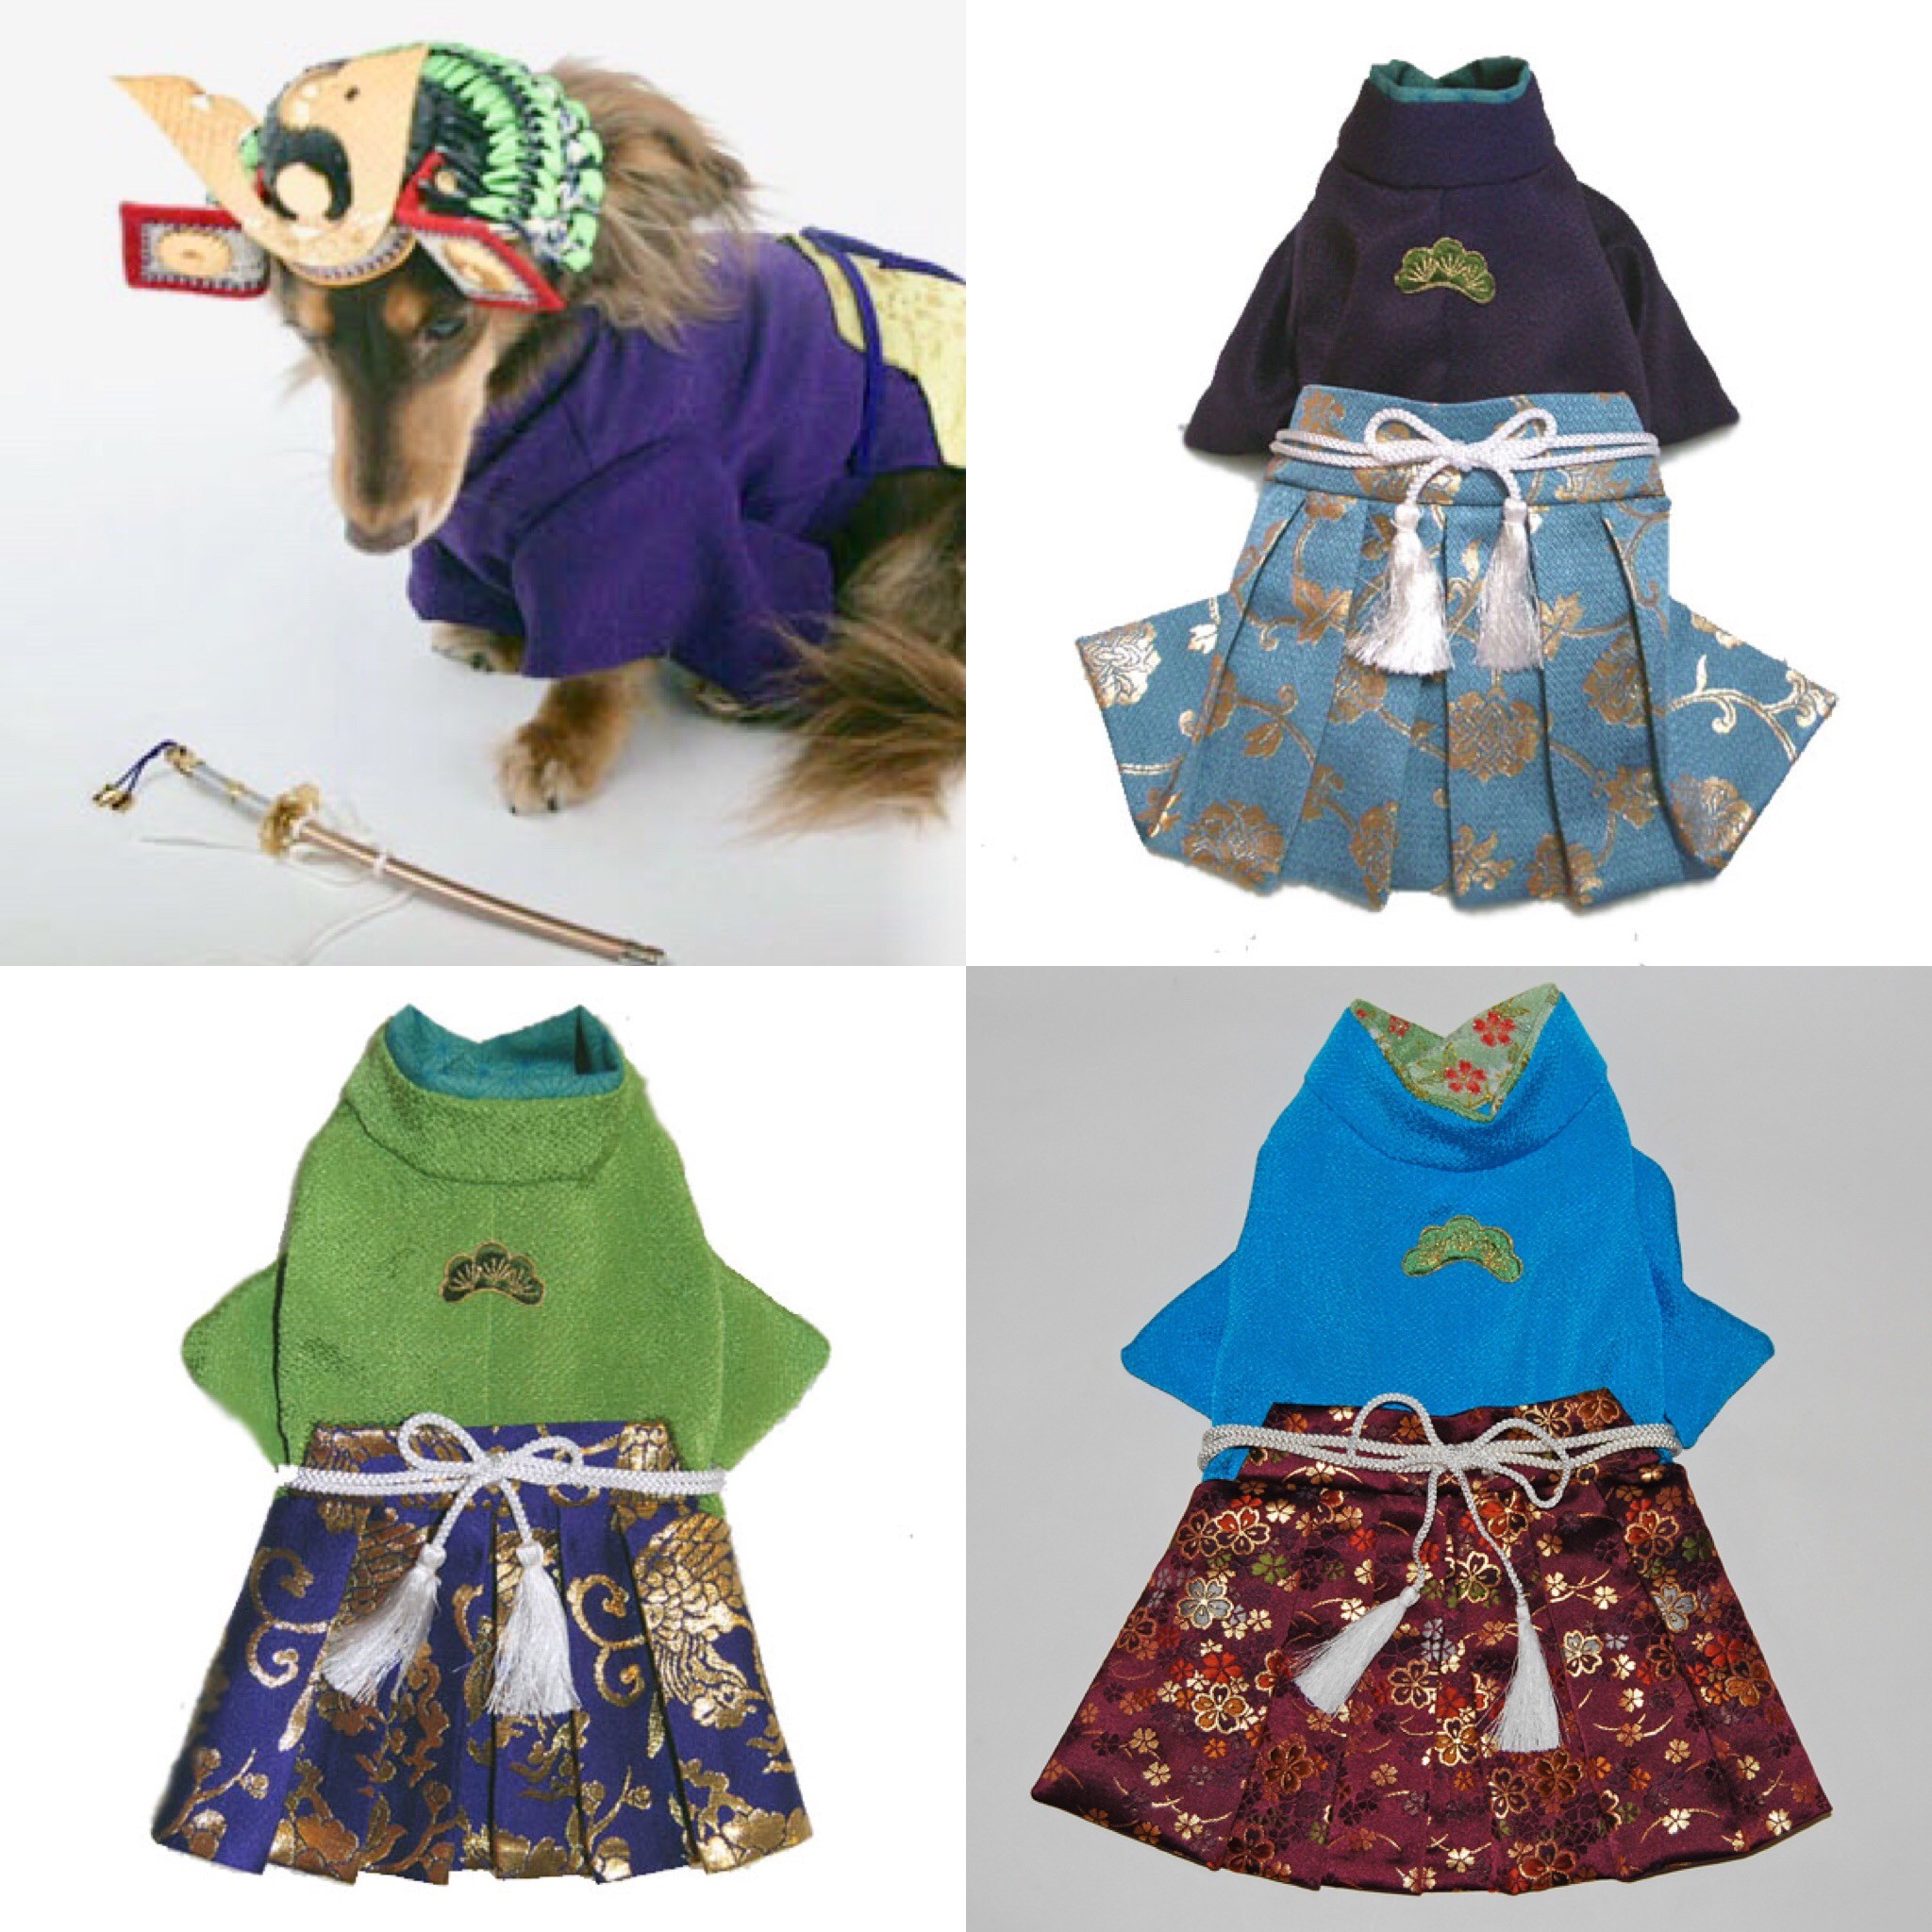 犬袴 江戸 オーダーメイド 犬服 犬の着物 Iichi ハンドメイド クラフト作品 手仕事品の通販